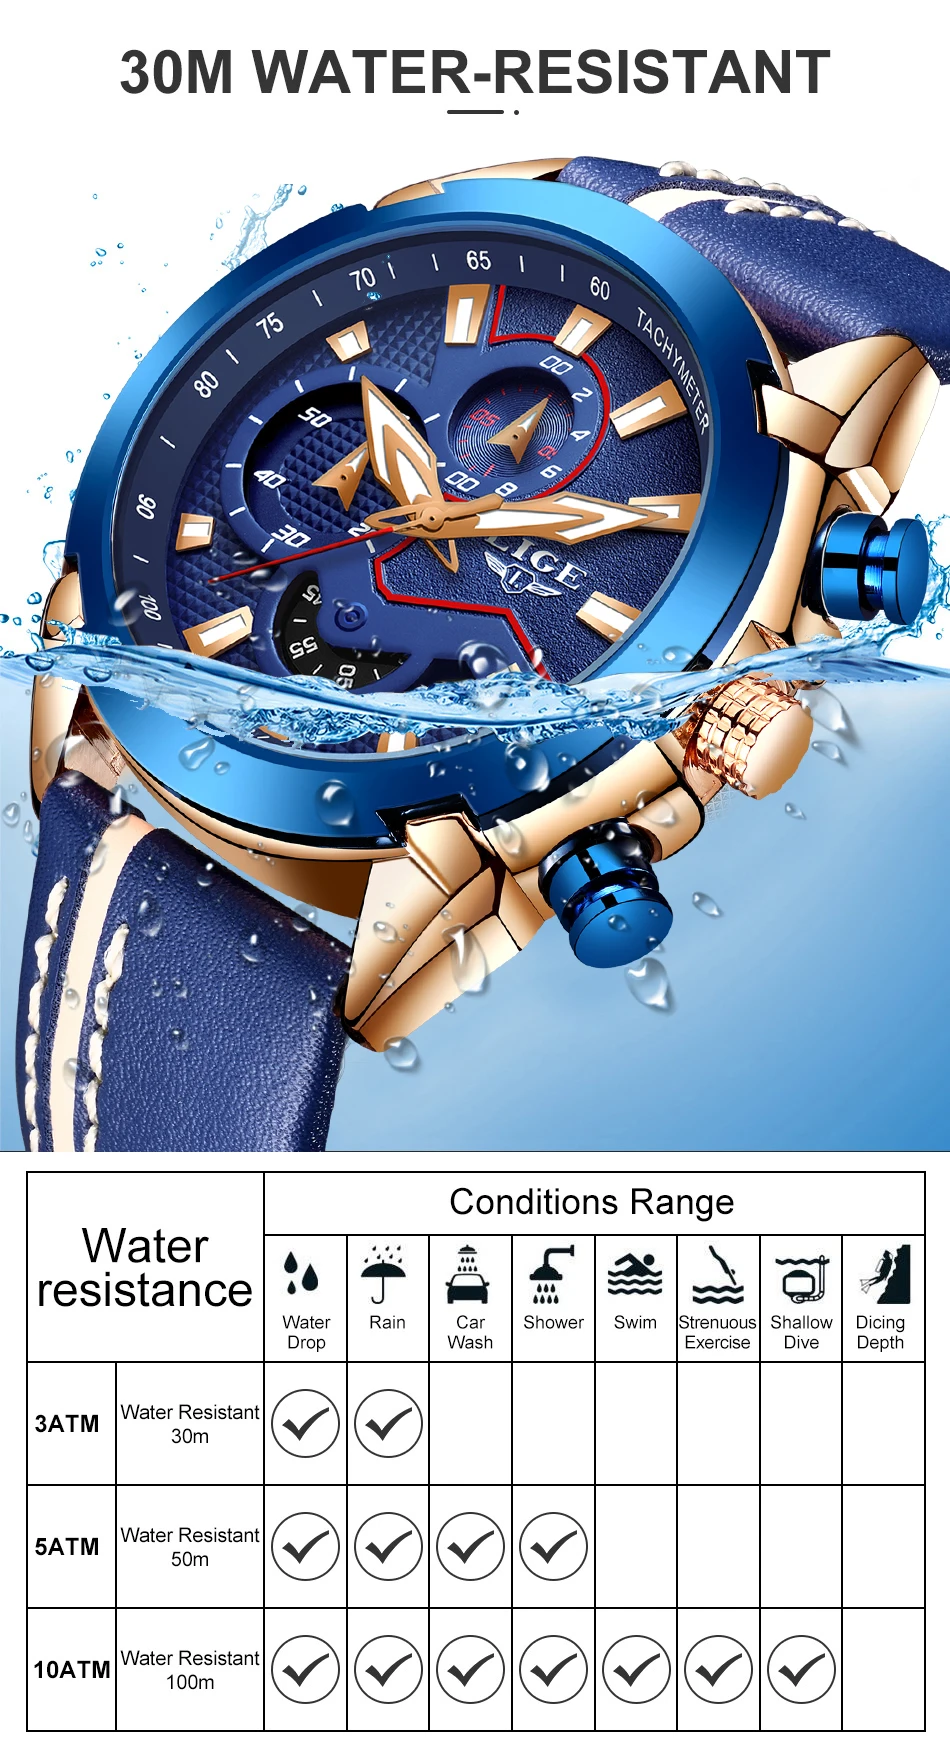 Relogio Masculino новые модные синие мужские часы LIGE Топ люксовый бренд наручные часы повседневные кожаные водонепроницаемые спортивные кварцевые часы